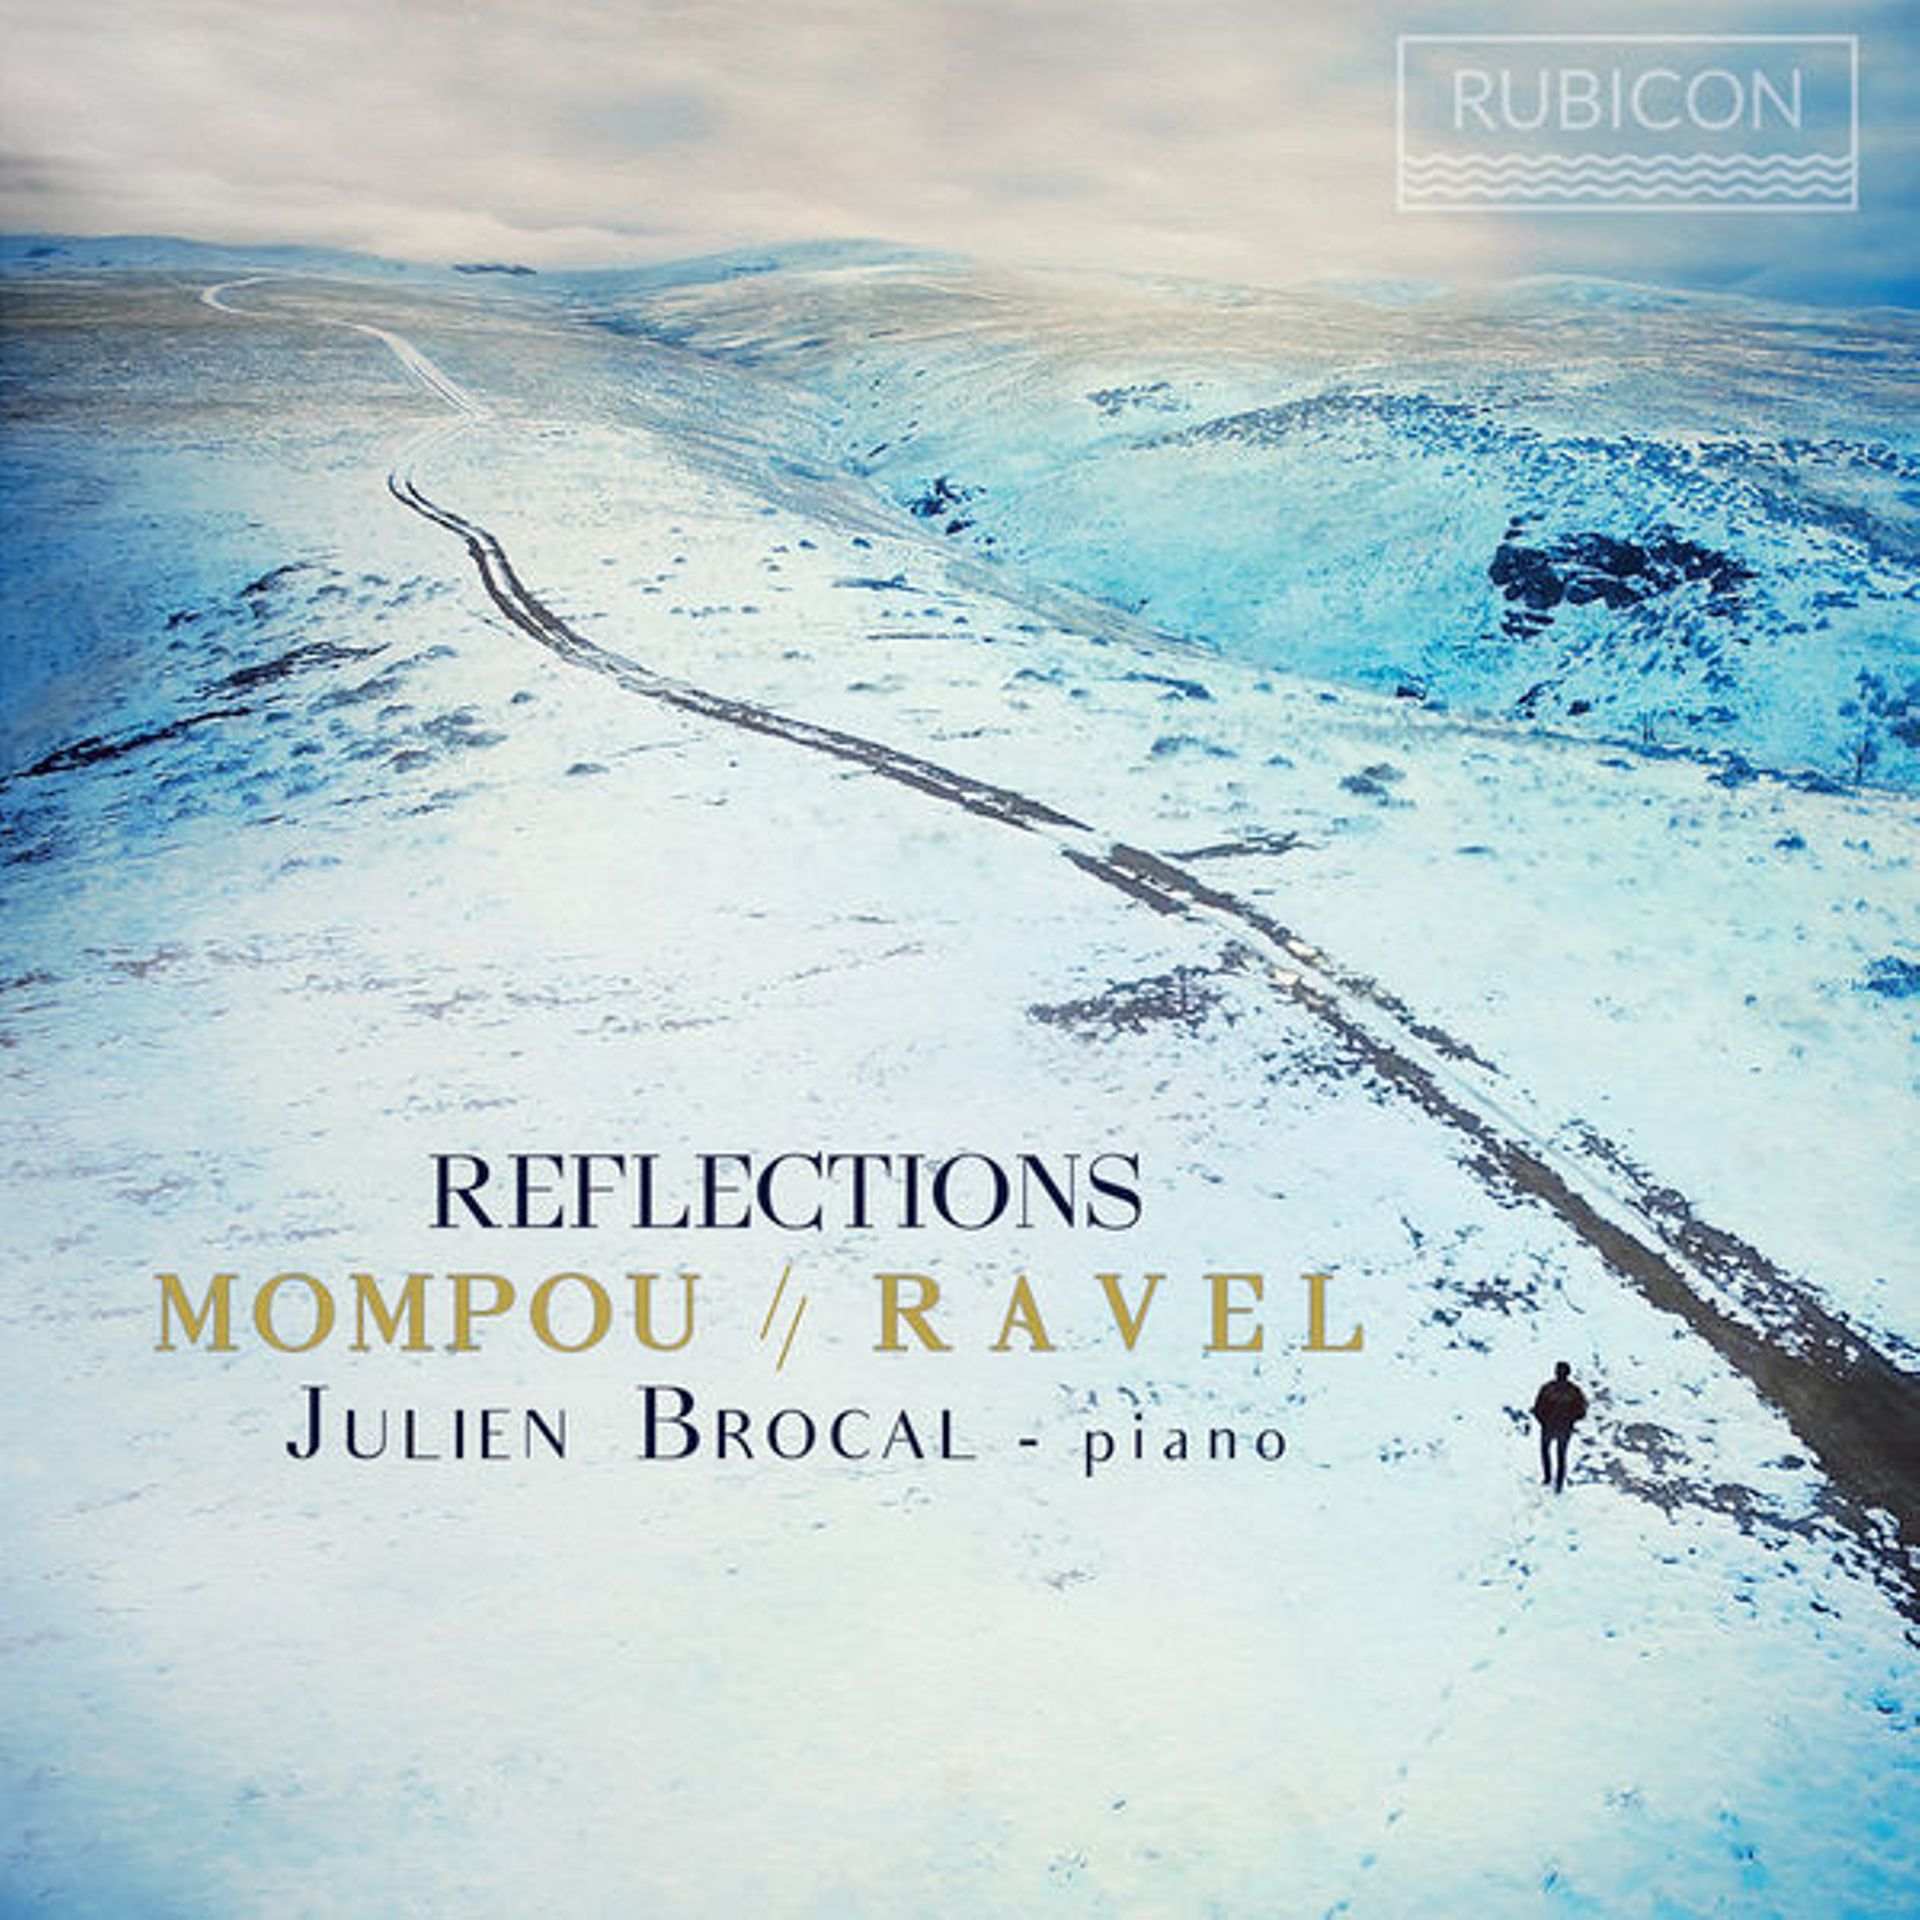 Le choix musical de Musiq'3 : Van Keulen Ensemble - Julien Brocal - Lucile Richardson & Ensemble Correspondances